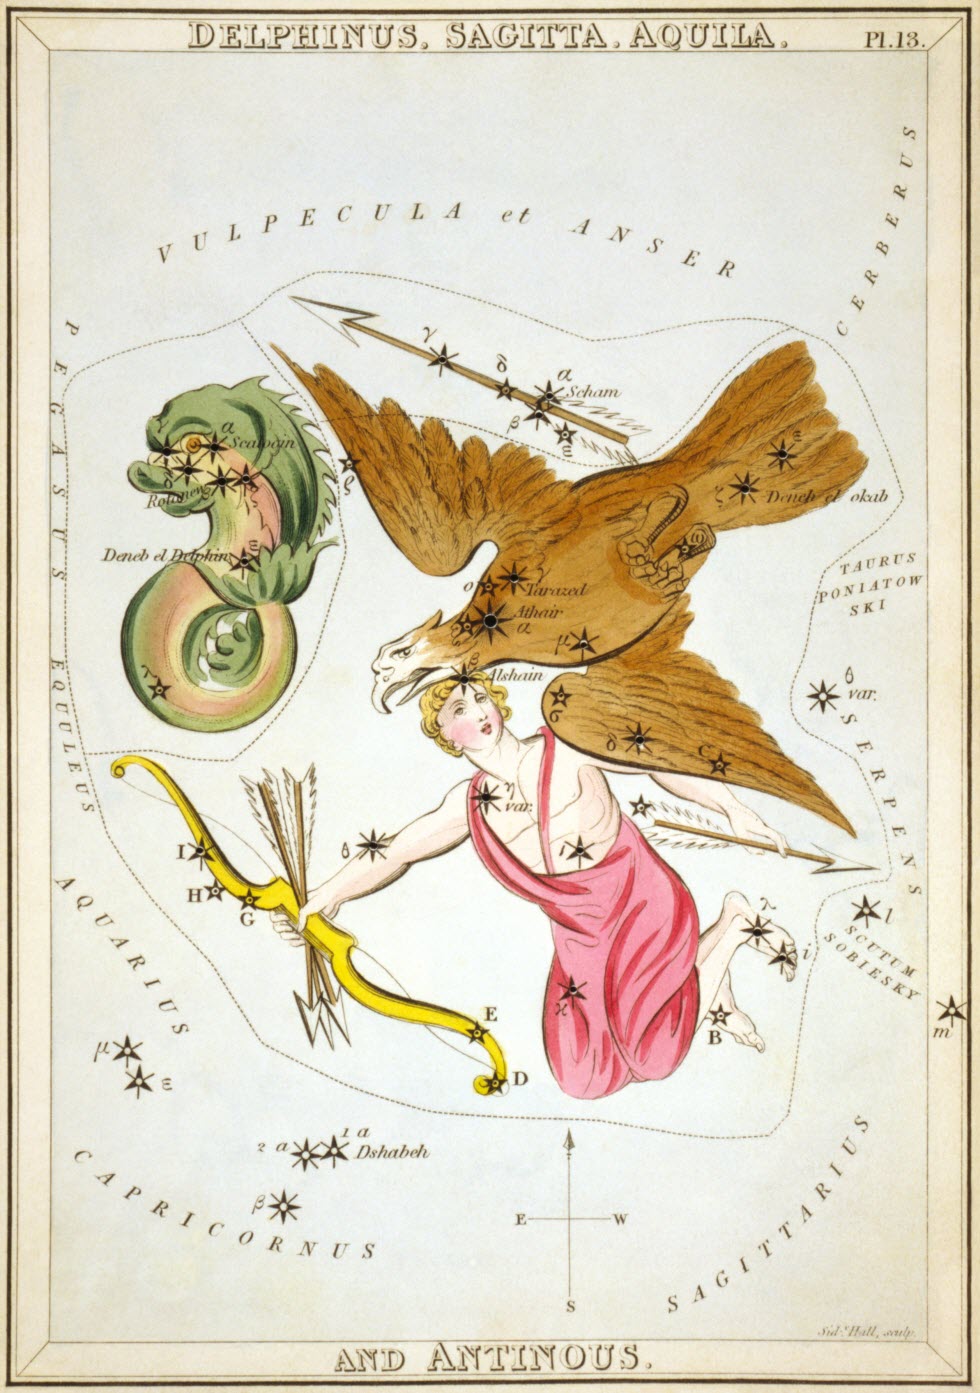 קבוצות הכוכבים העיט, אנטינואוס והחץ. מתוך האטלס של ג'יימיסון לונדון בשנת 1822. (קרדיט: ויקיפדיה)